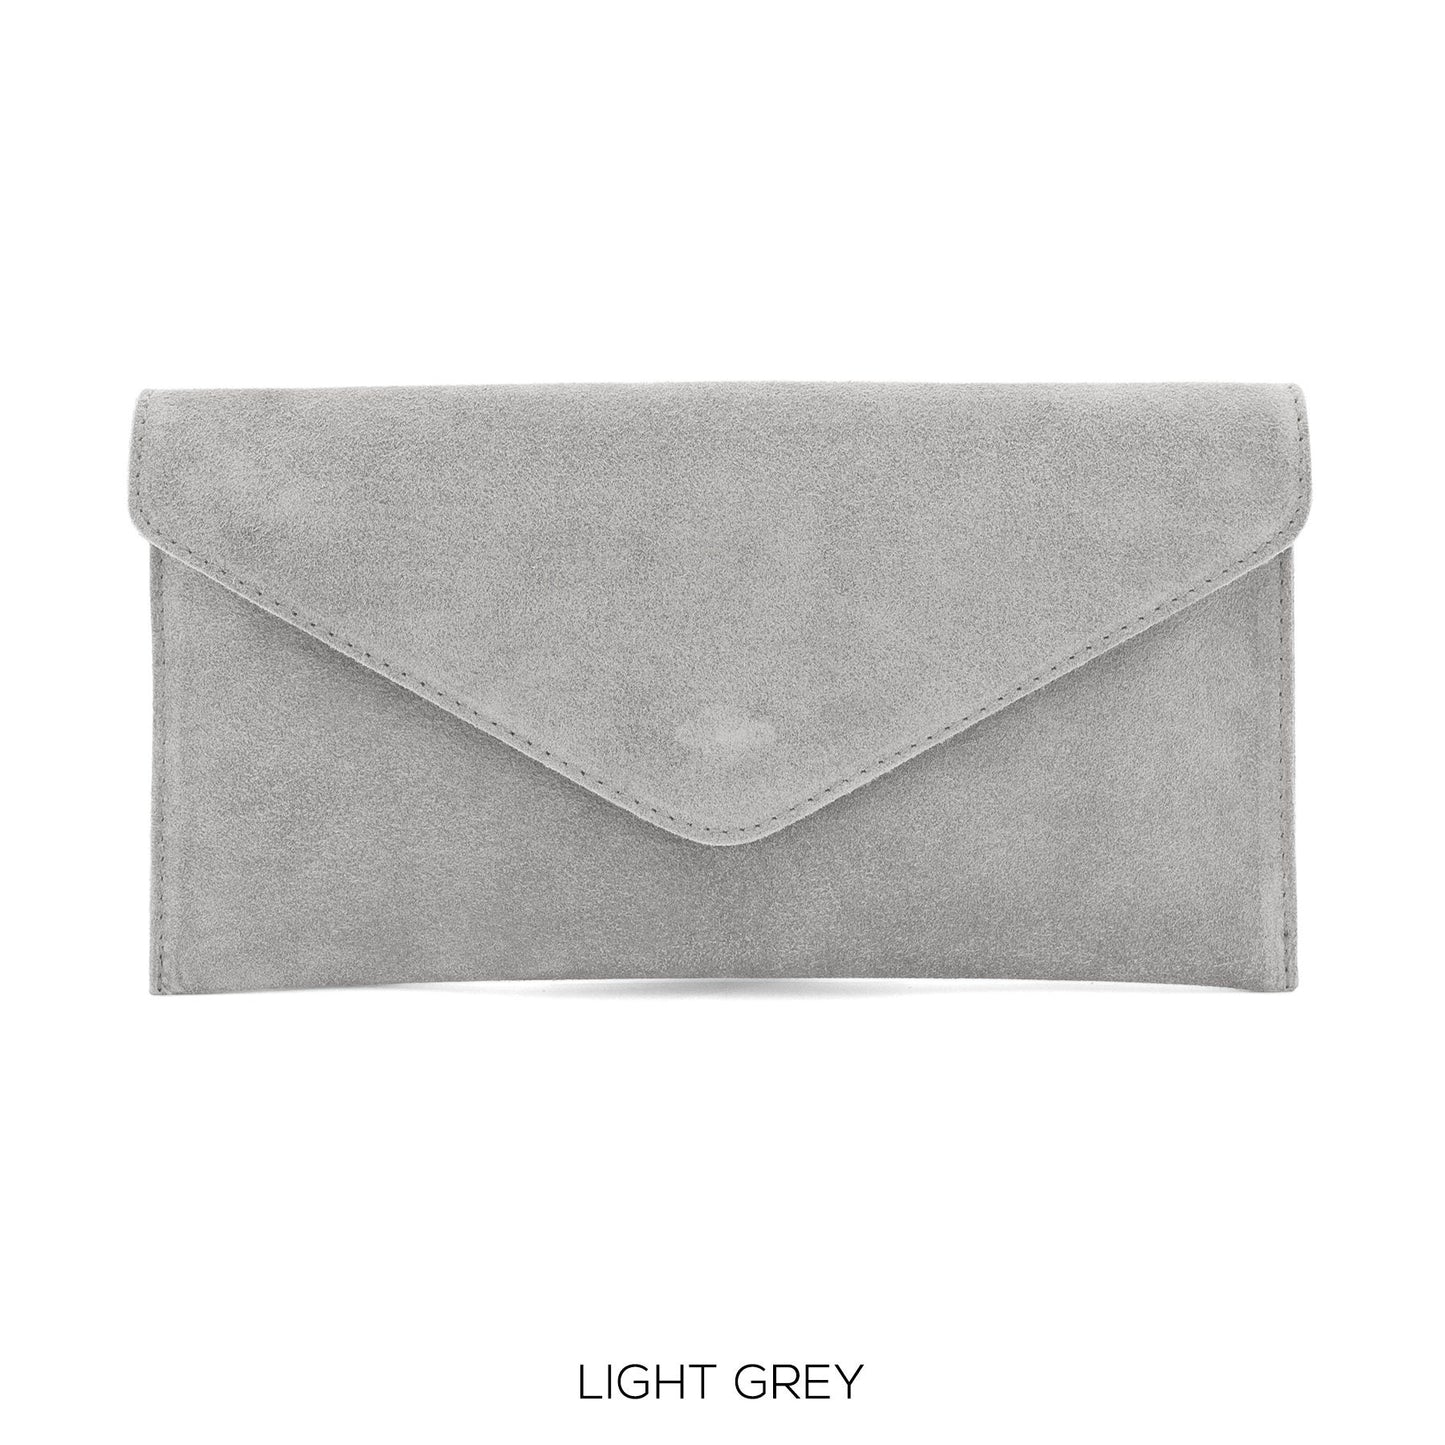 Light Grey envelope clutch bag